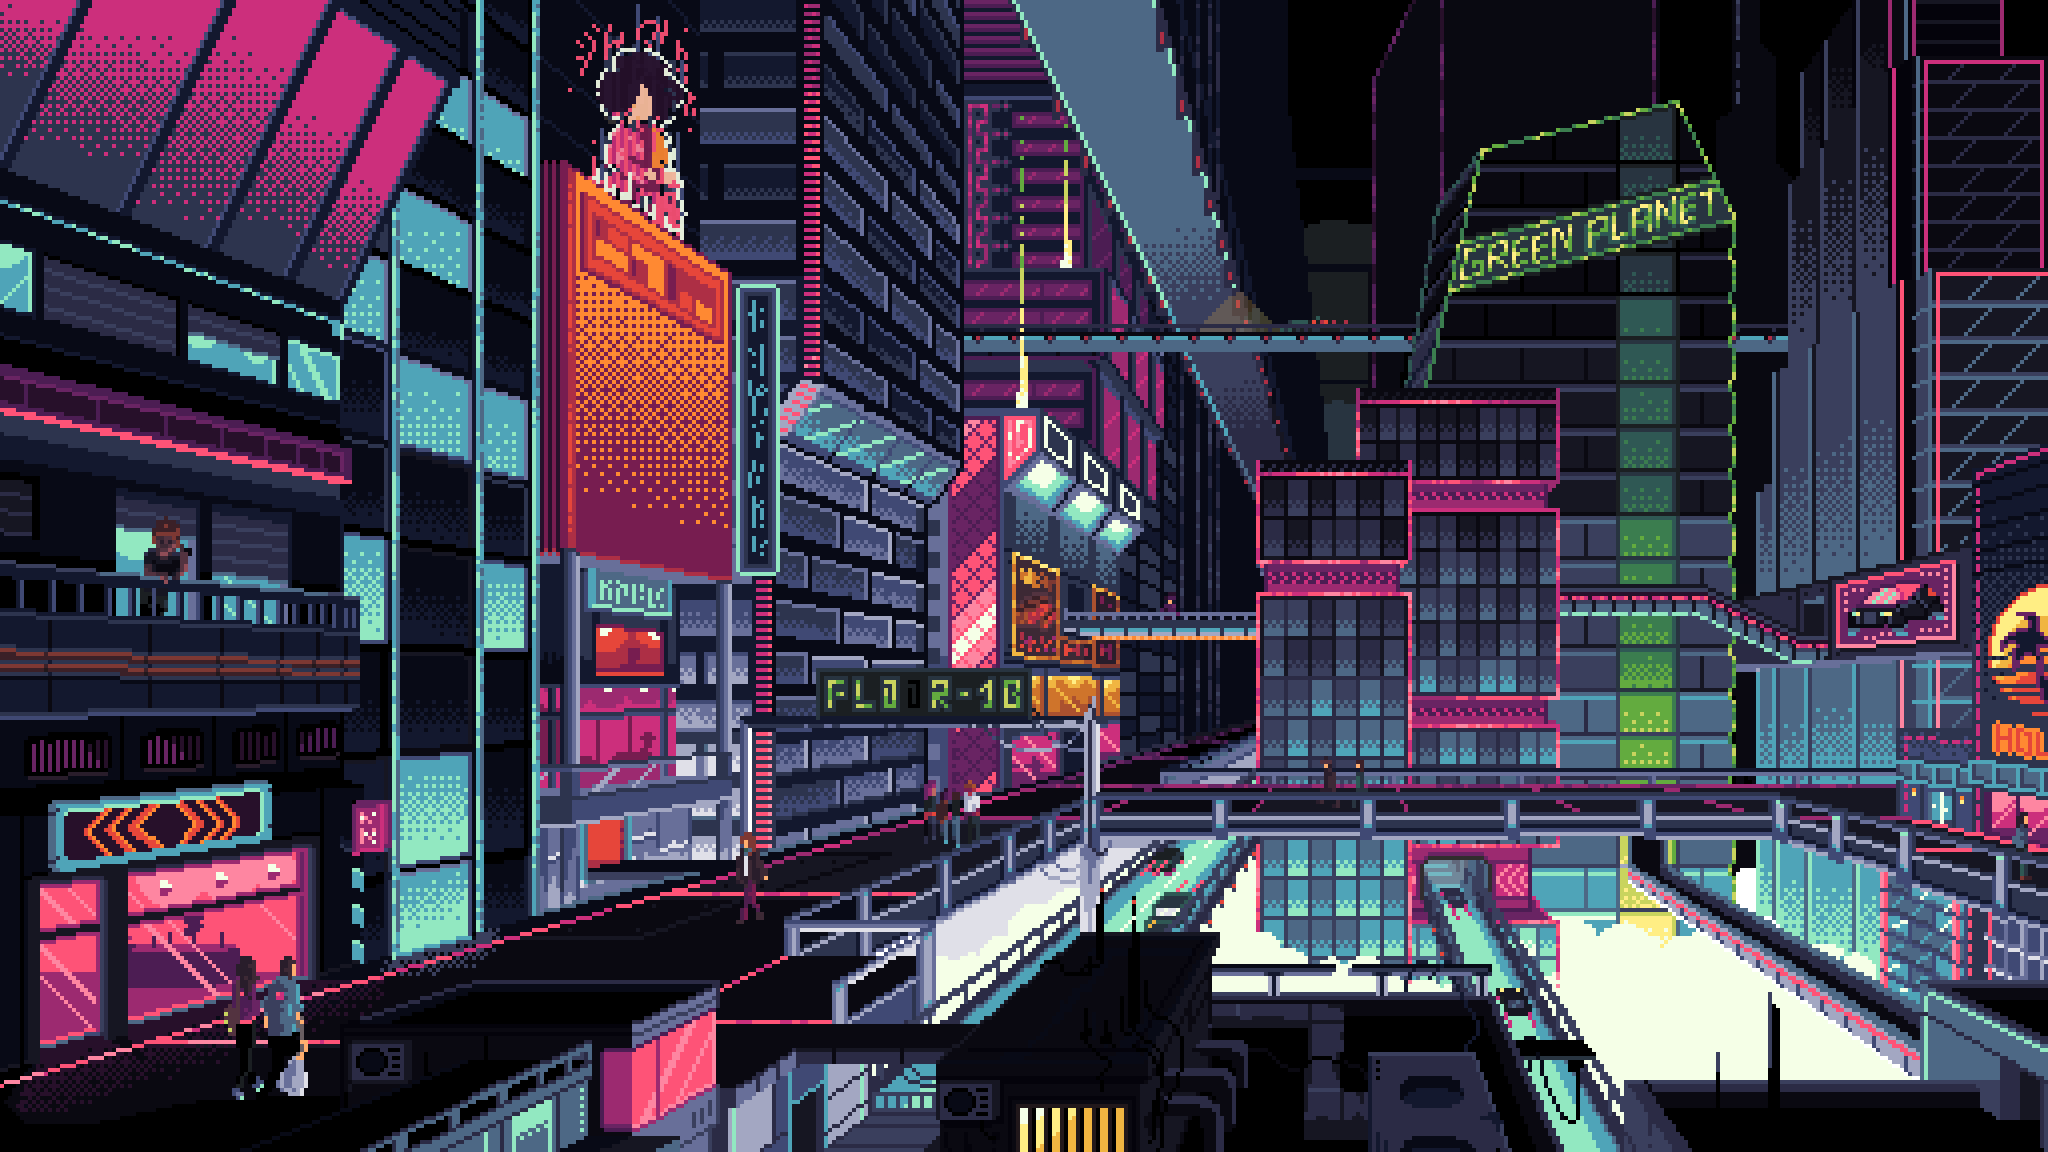 Cyberpunk City Pixel Art Wallpaper, Hd Artist 4K Wallpapers, Images And